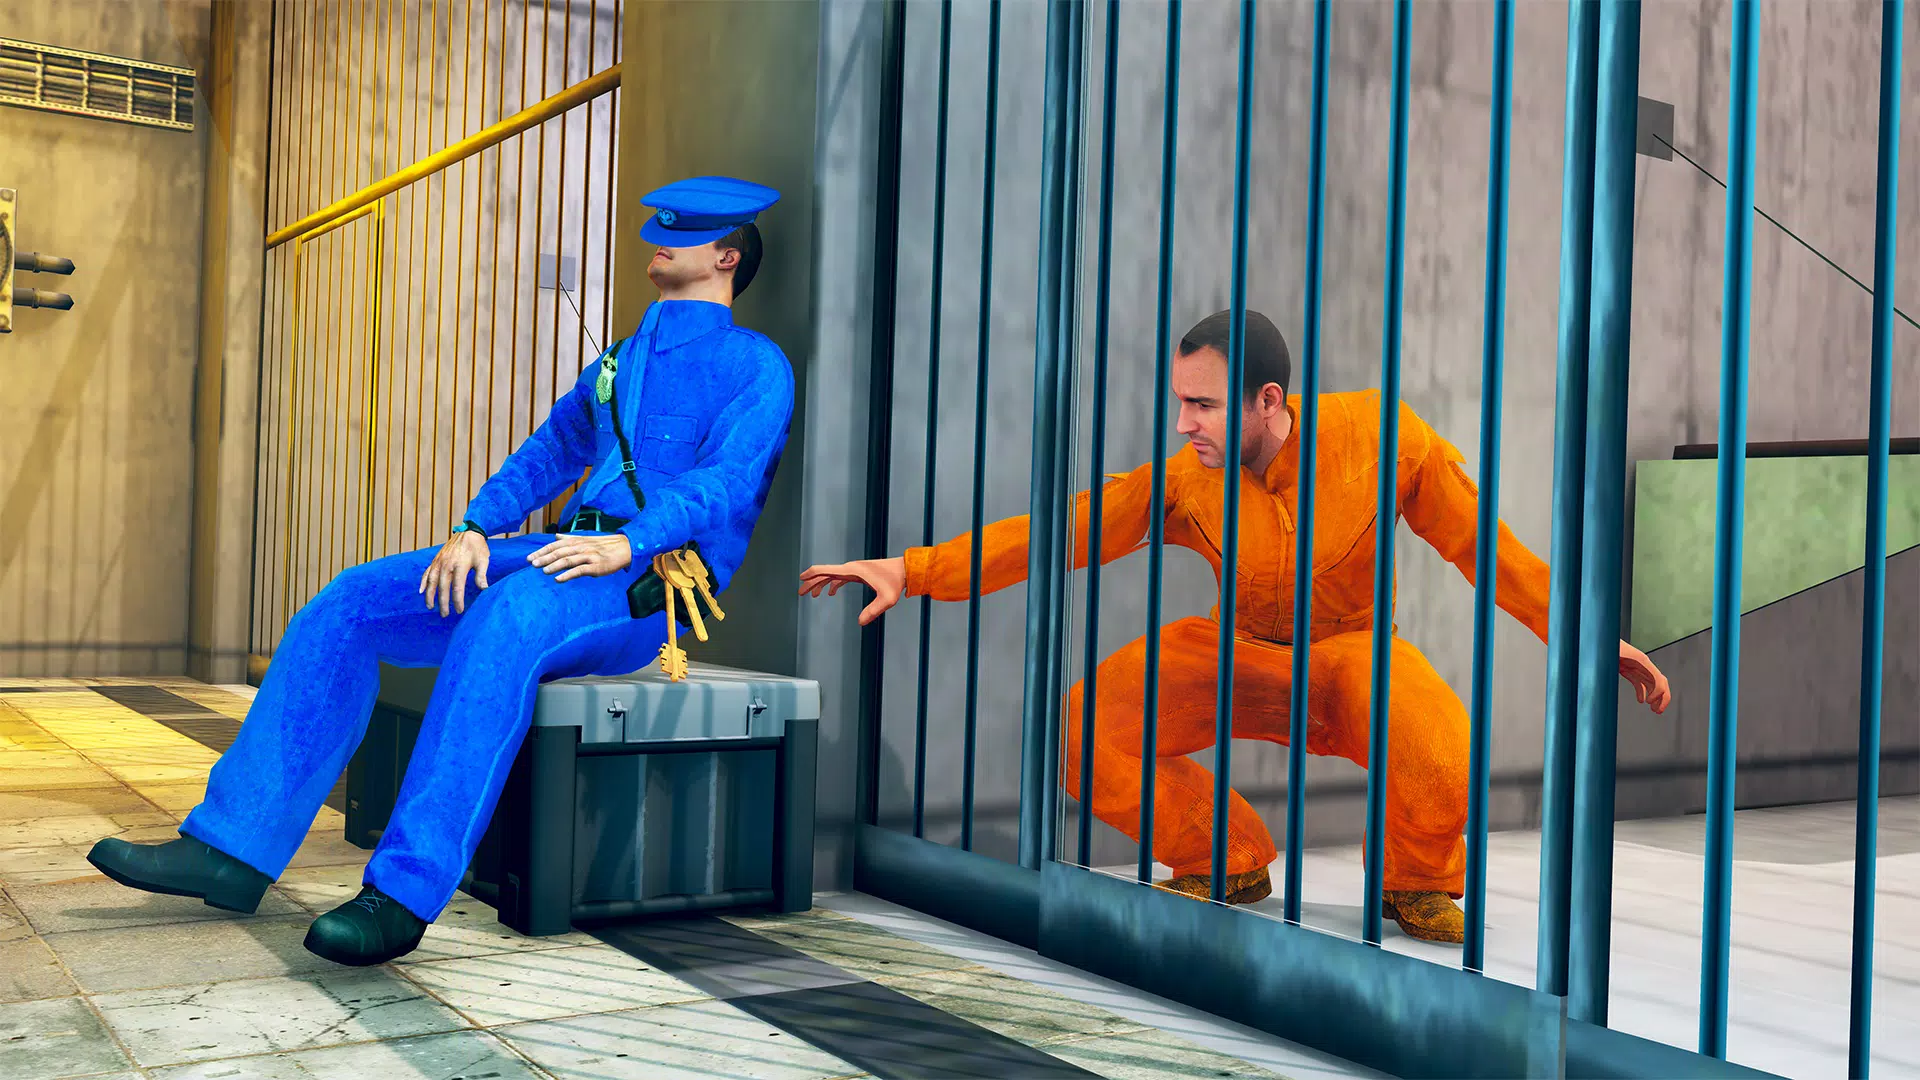 Prison Escape Jail Break 3D